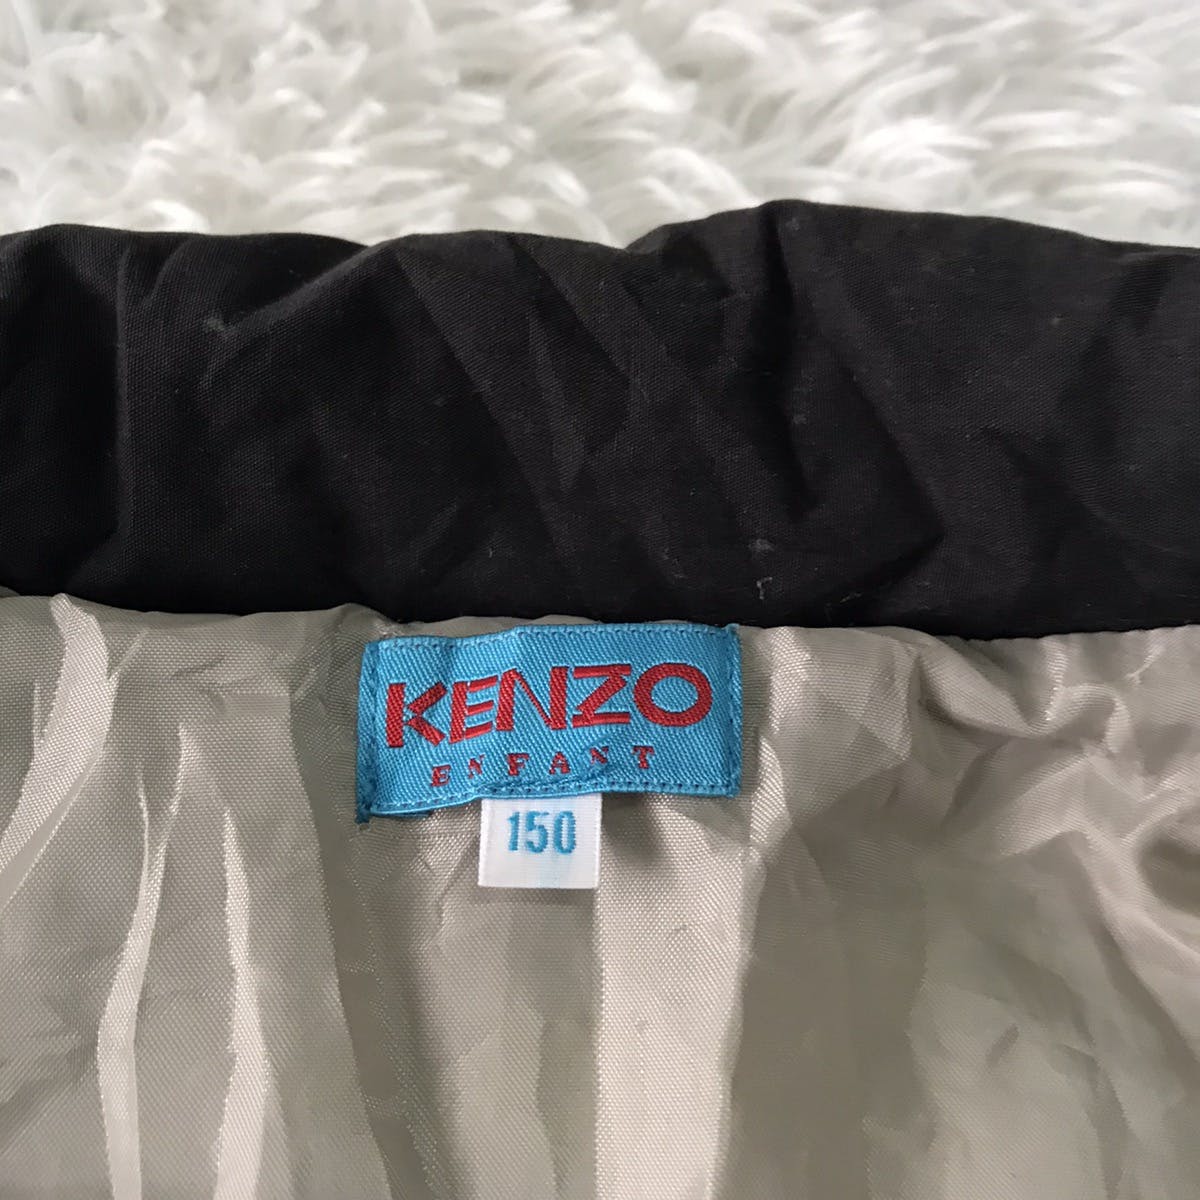 Kenzo enfant jacket size on tag 150 - 12